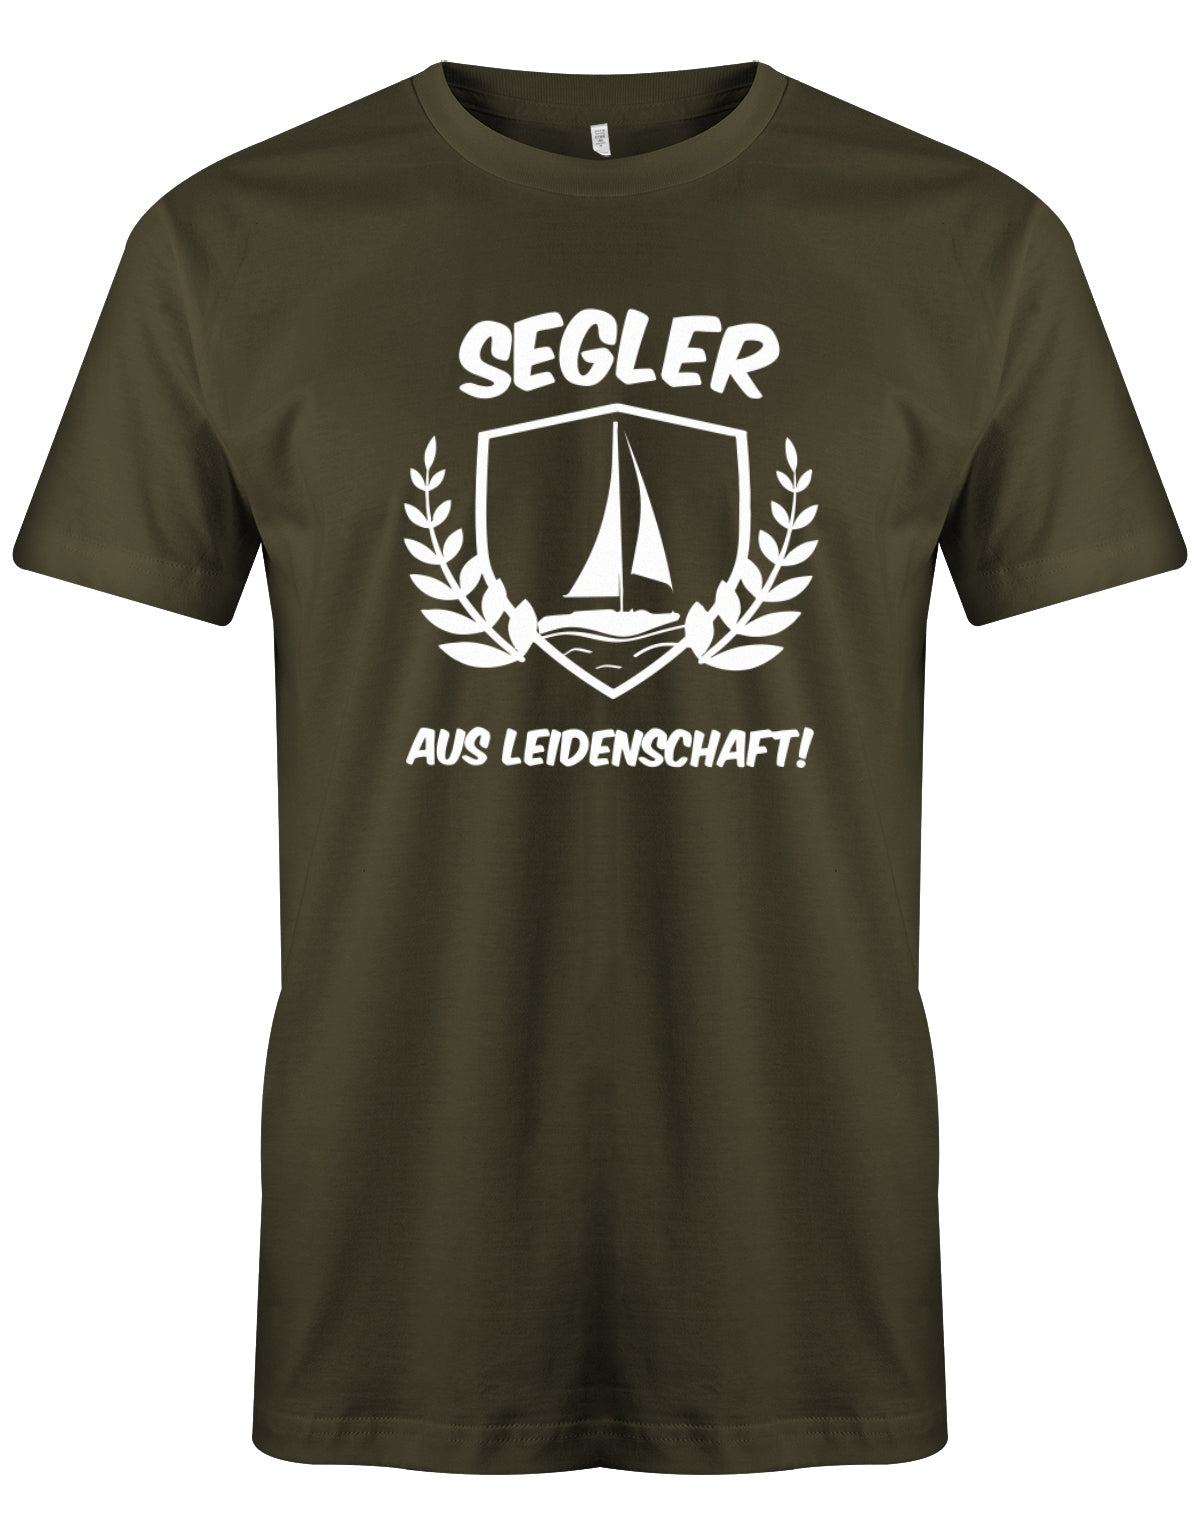 Das Segler t-shirt bedruckt mit "Segler aus Leidenschaft mit Segelboot" Army